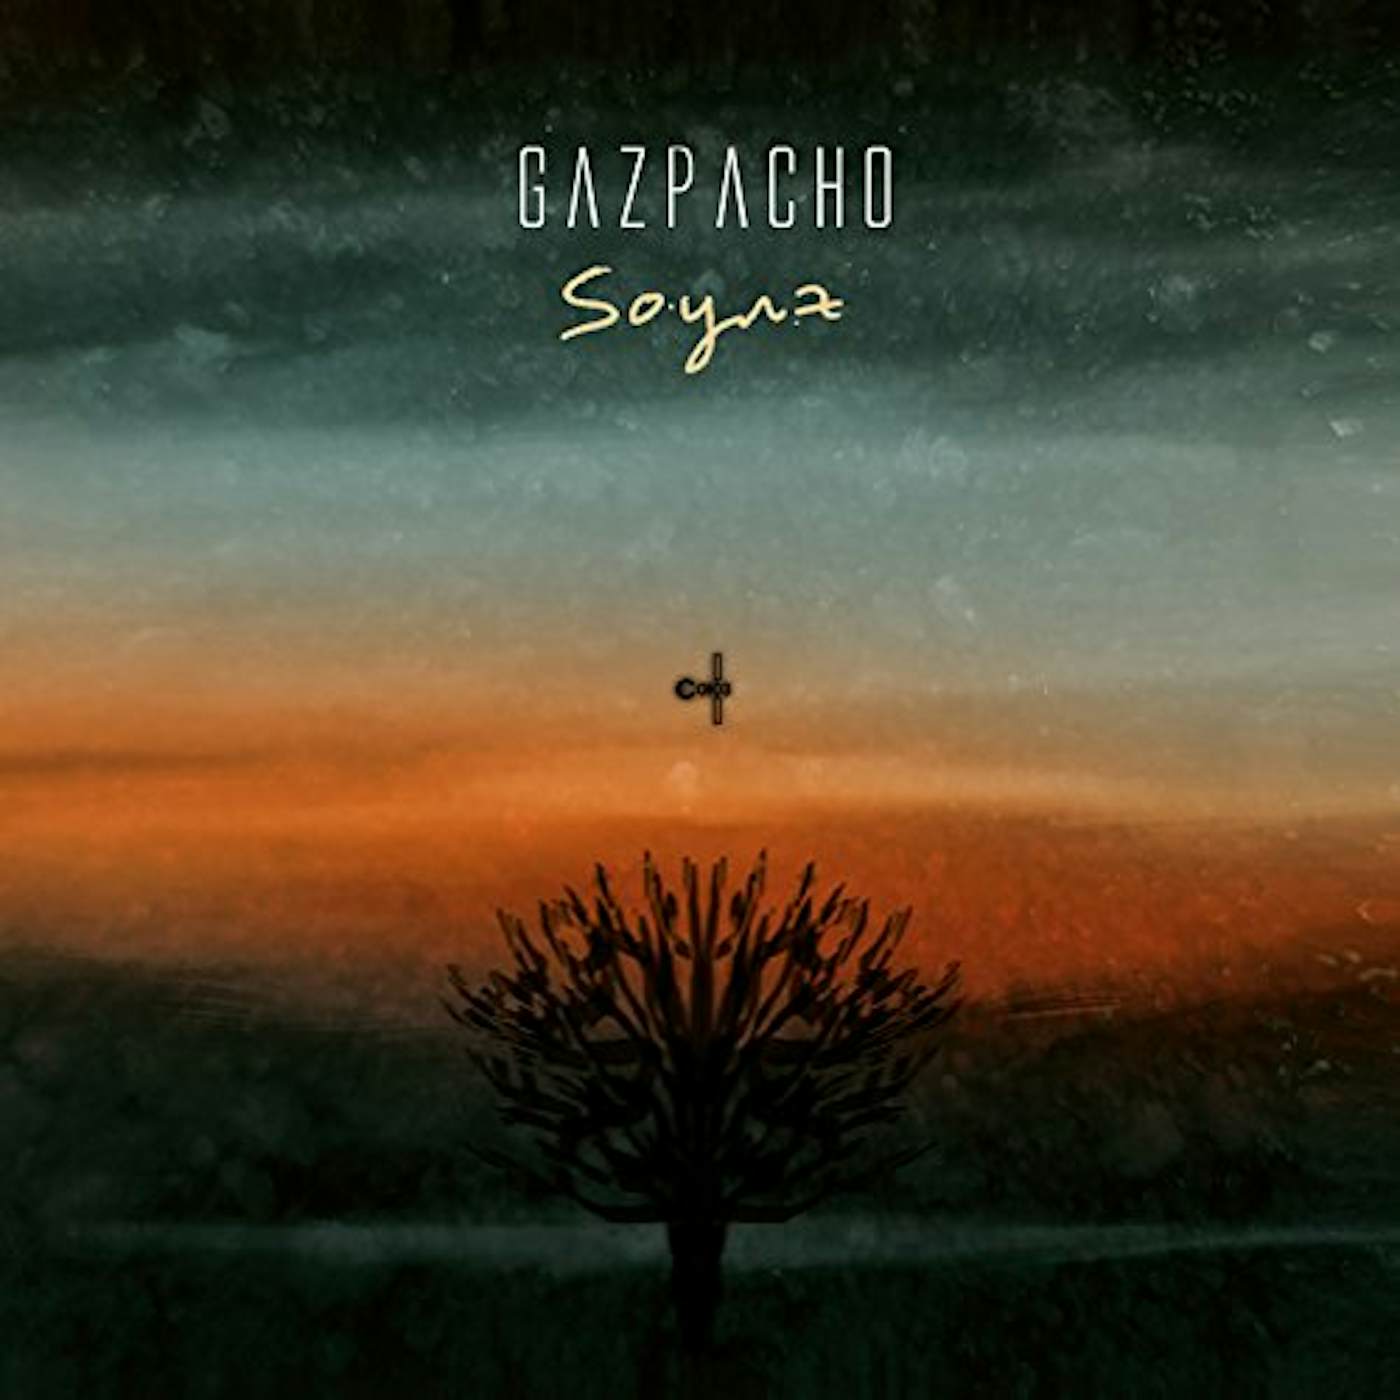 Gazpacho Soyuz Vinyl Record